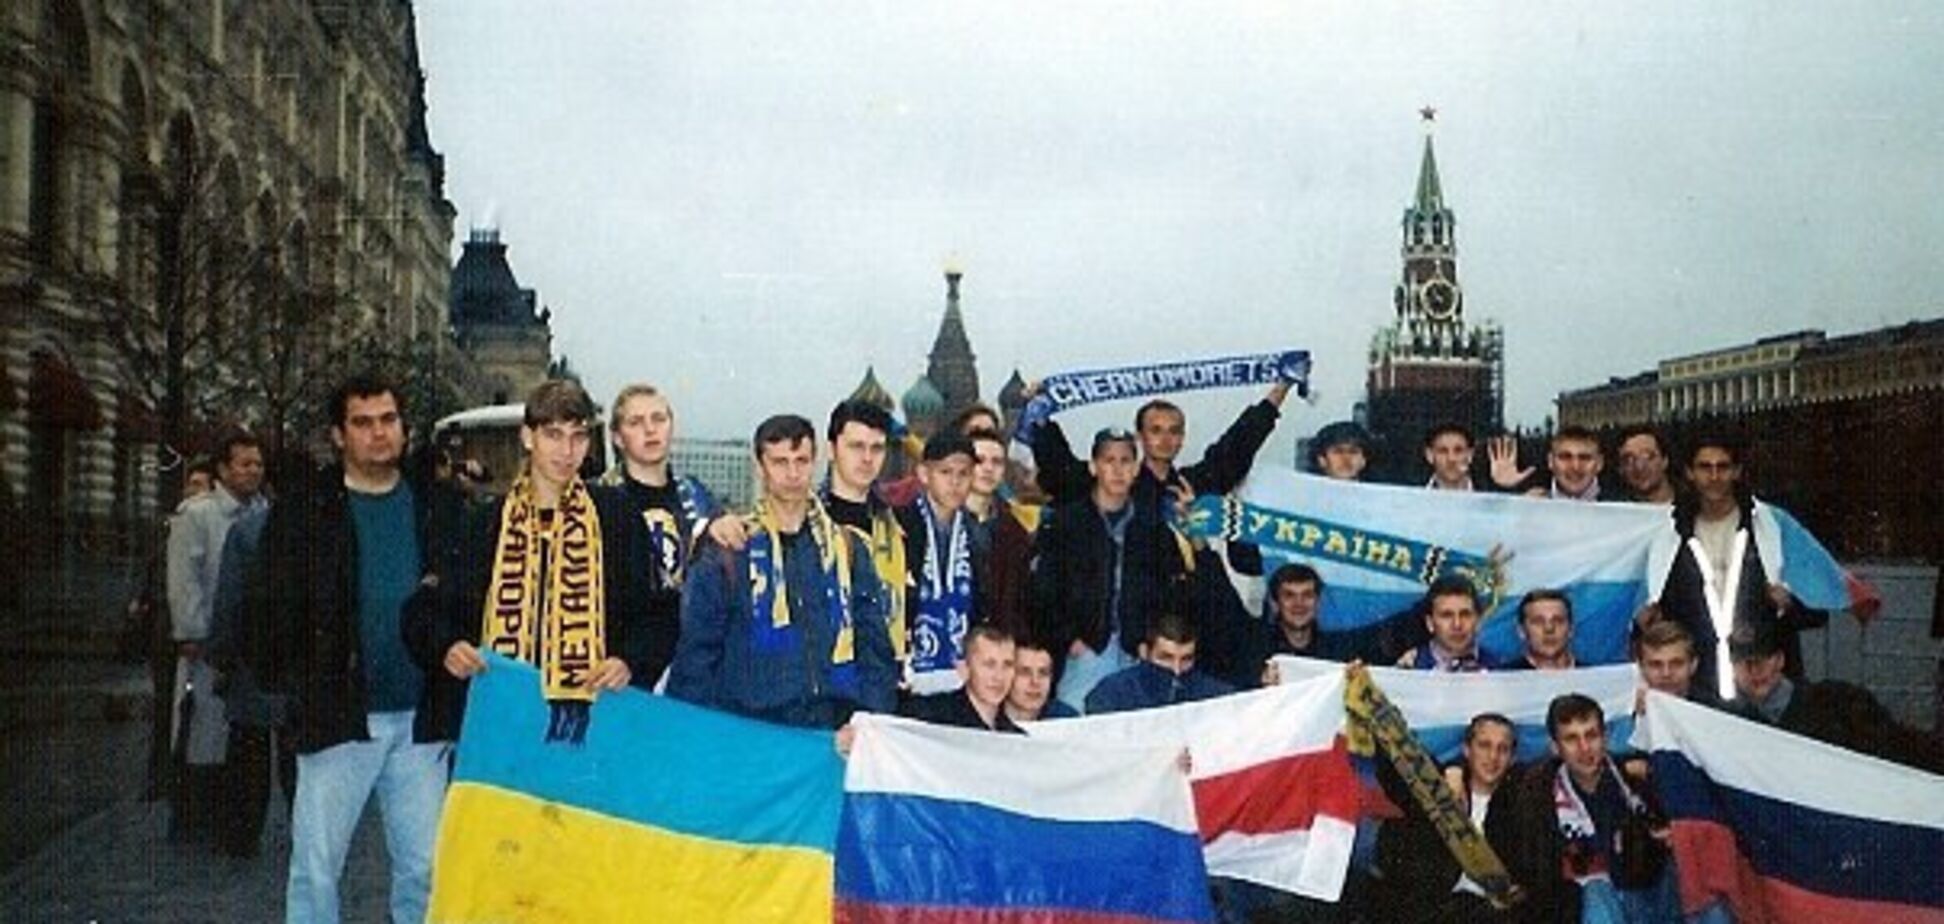 В сети показали историческое фото украинских болельщиков на Красной площади